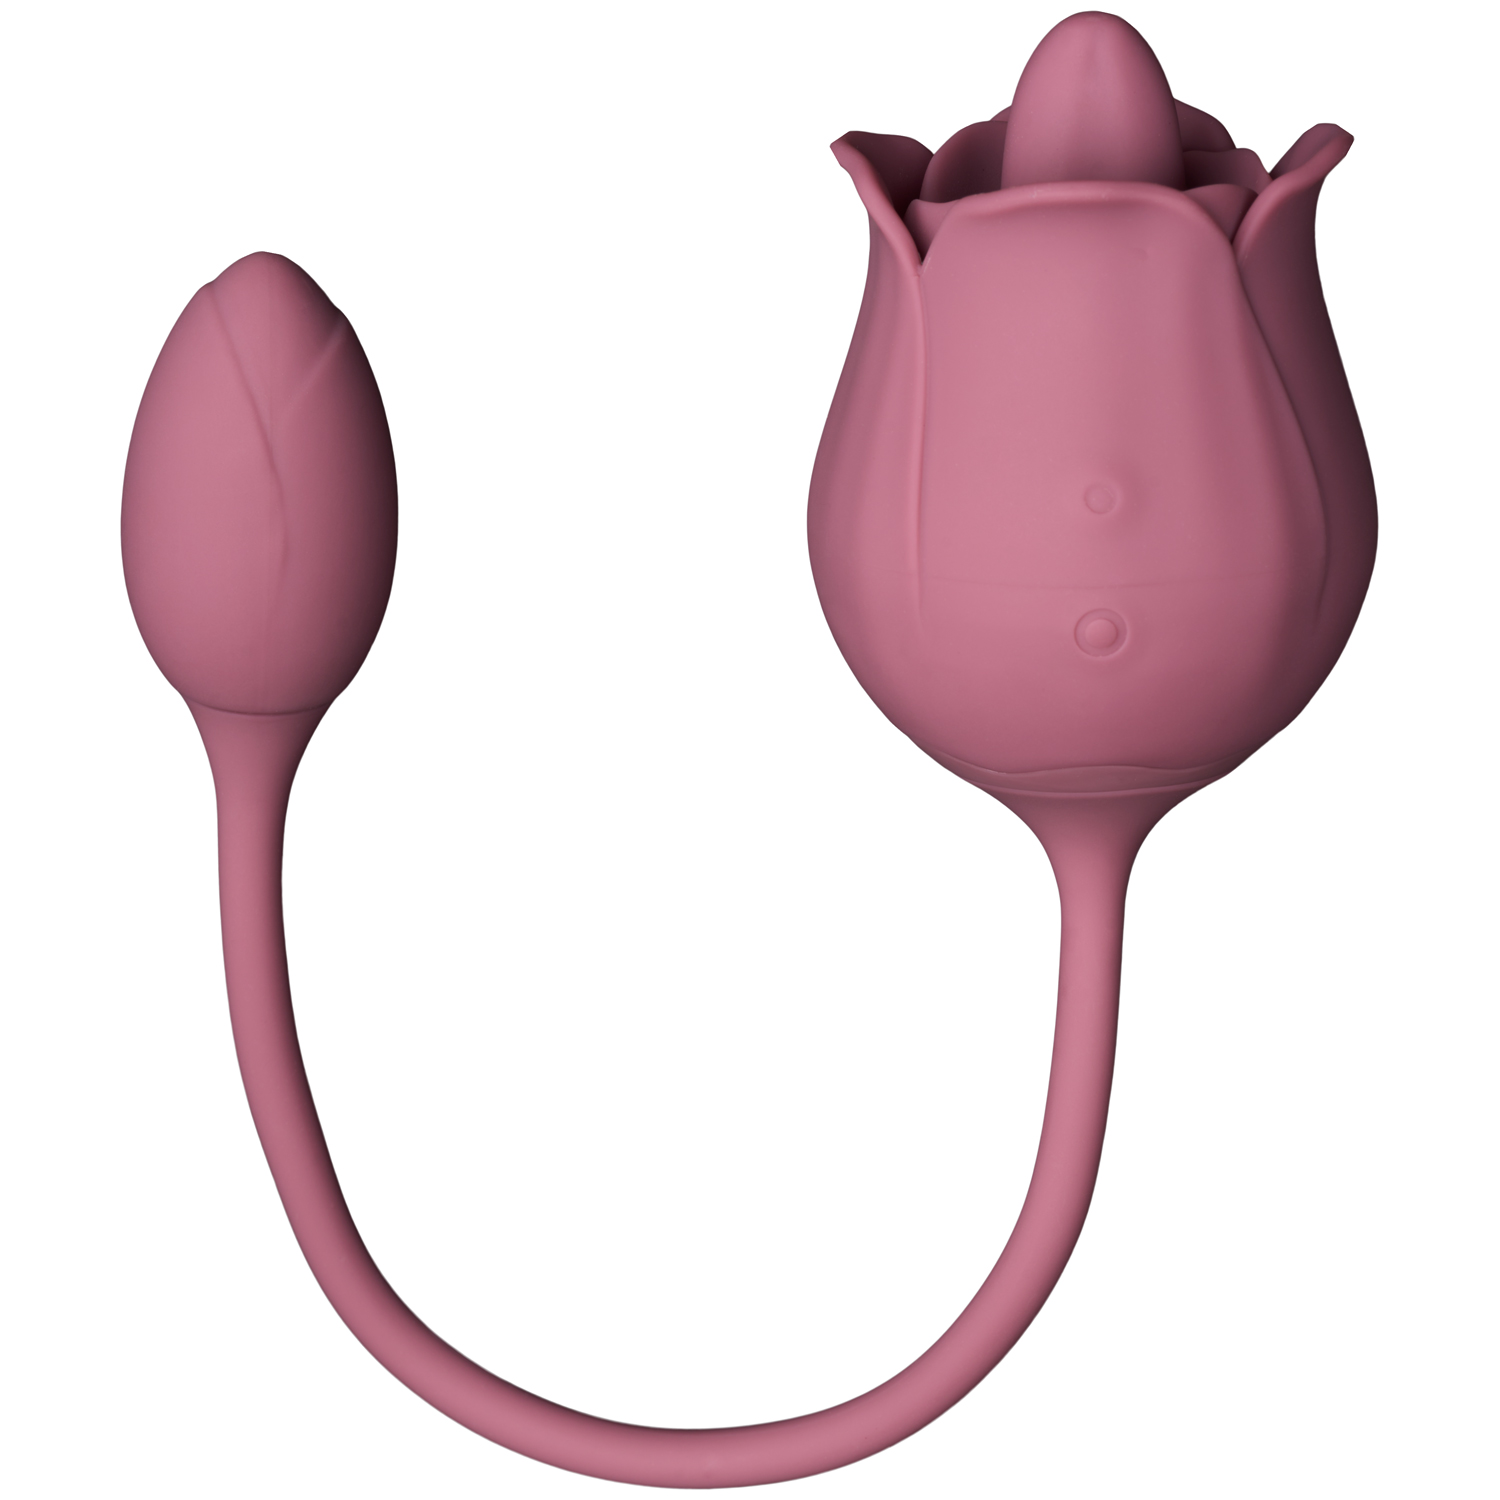 Amaysin Licking Rose and Egg Vibrator - Pink thumbnail